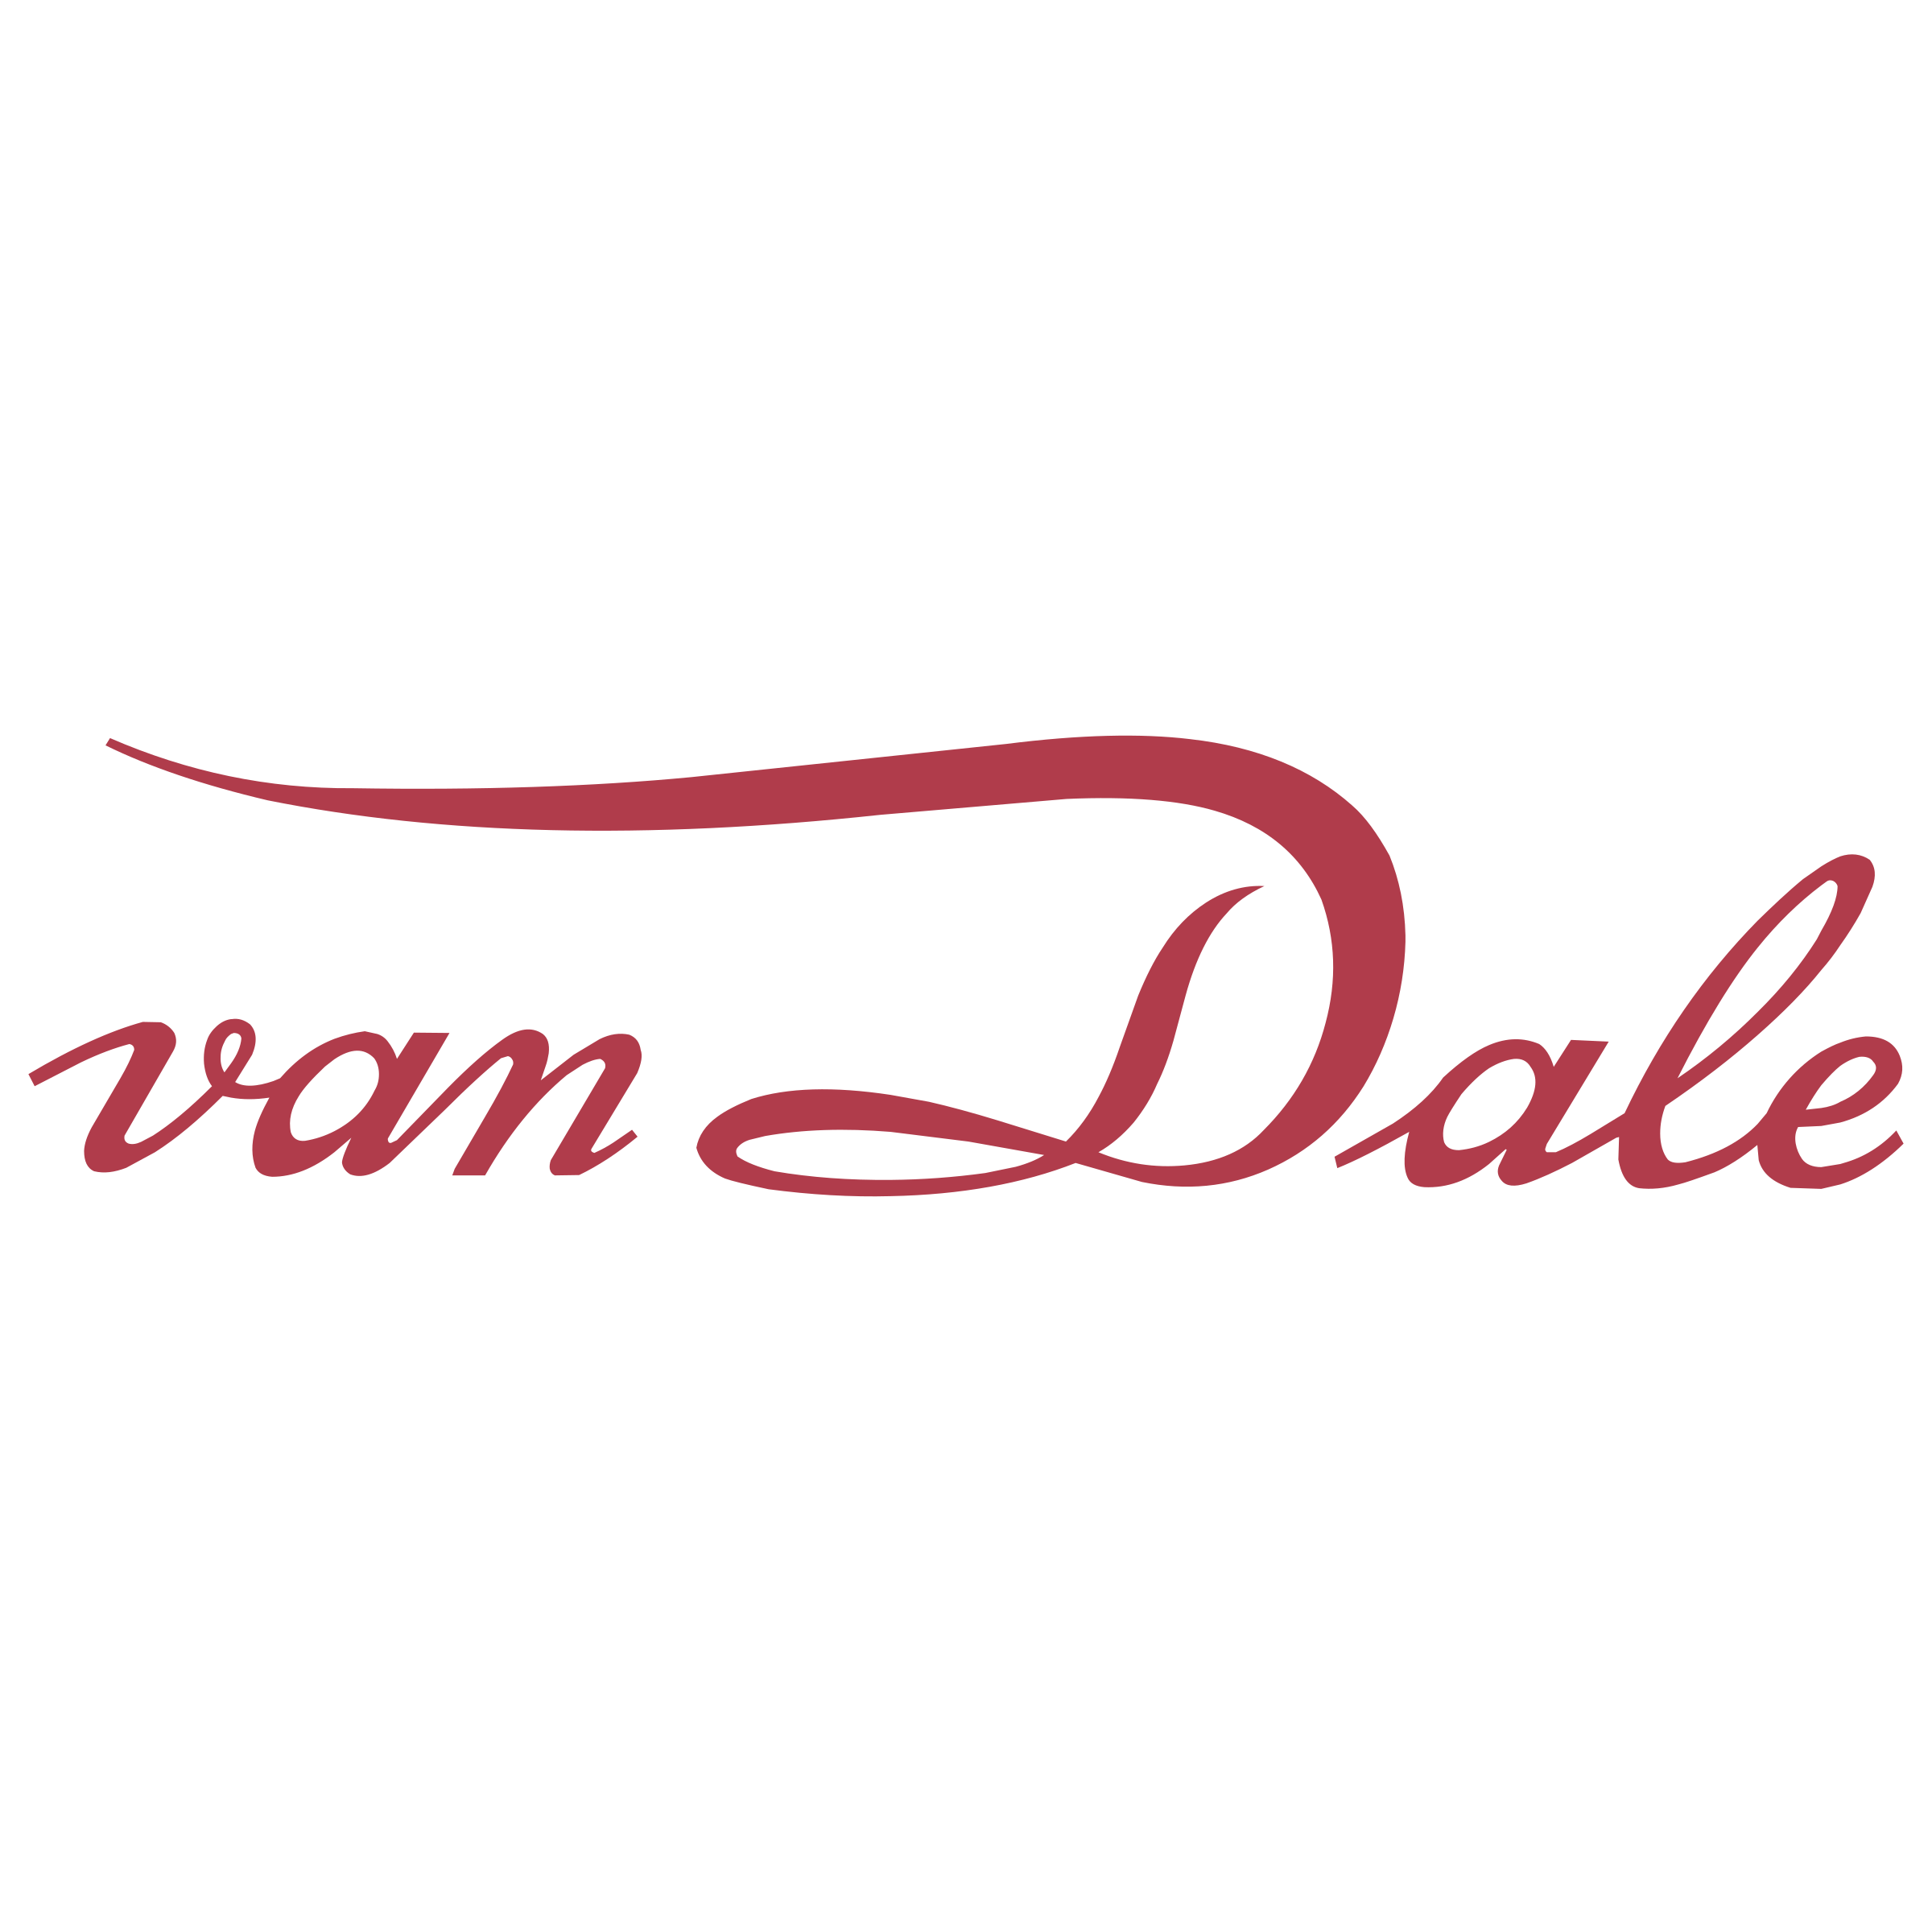 Dale Logo - Van Dale Logo PNG Transparent & SVG Vector - Freebie Supply